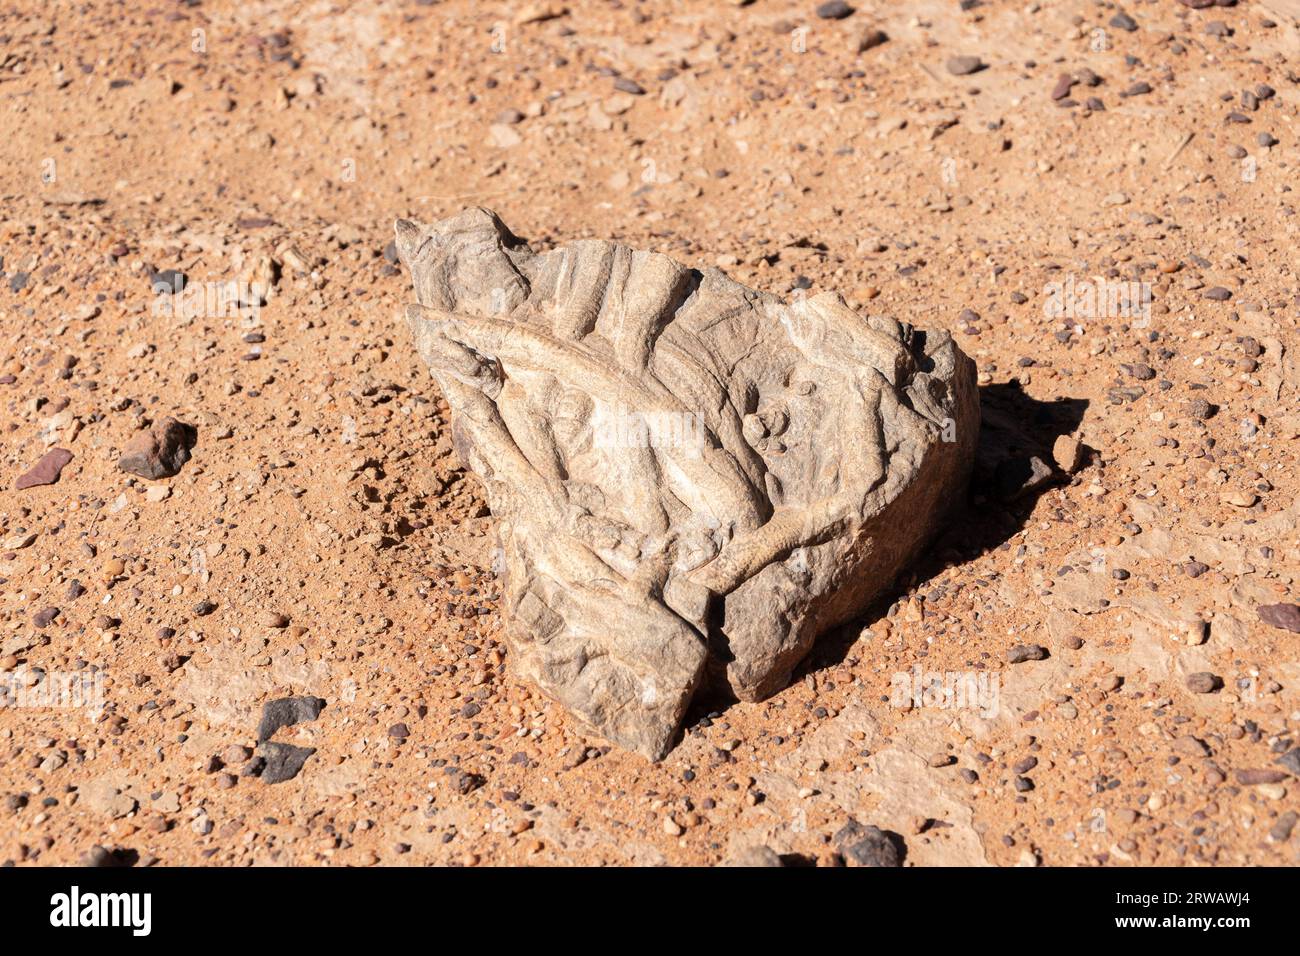 Fossil in the Sahara desert Stock Photo